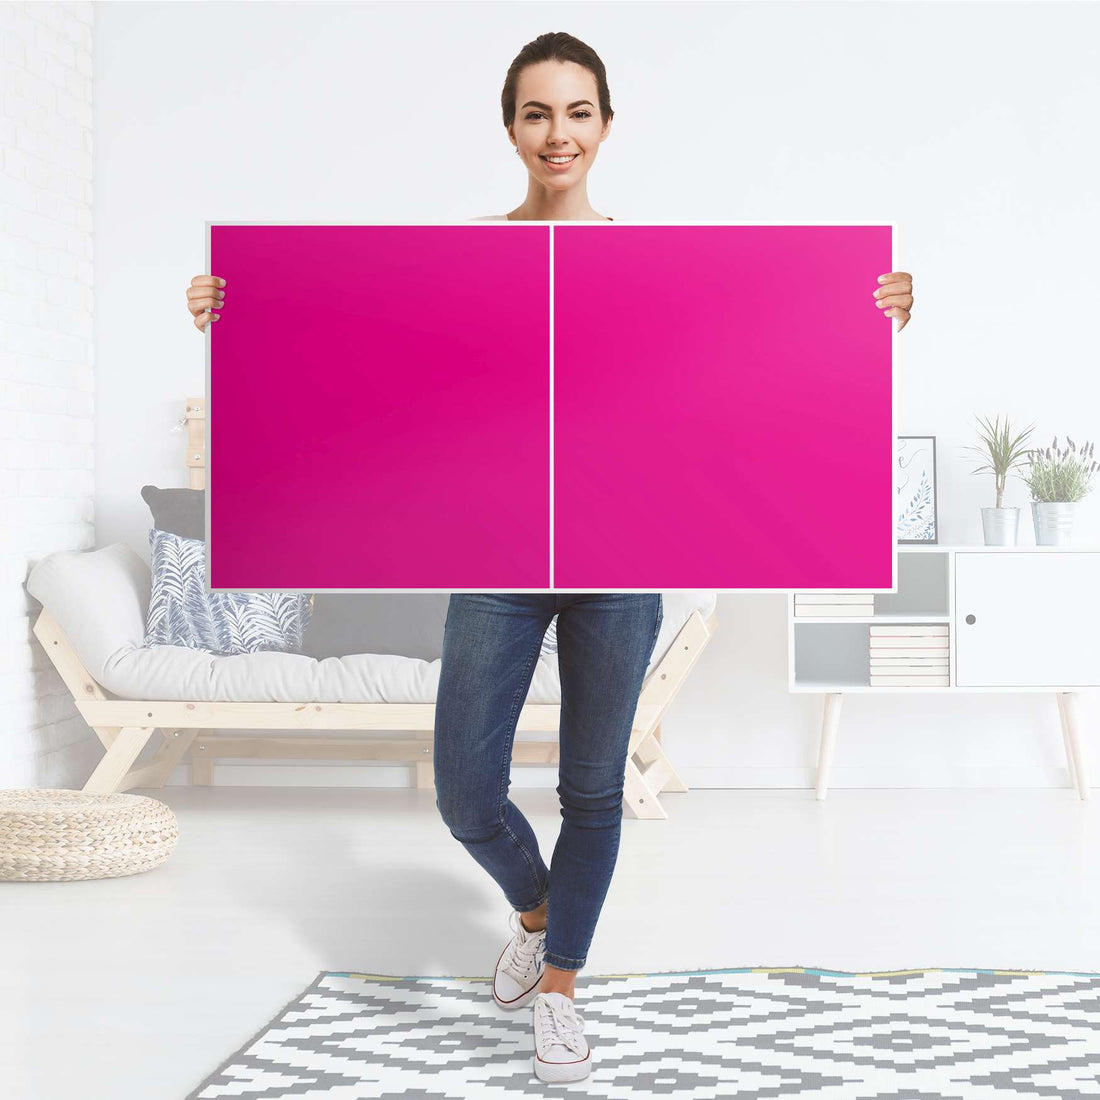 Folie für Möbel Pink Dark - IKEA Besta Regal Quer 2 Türen - Folie